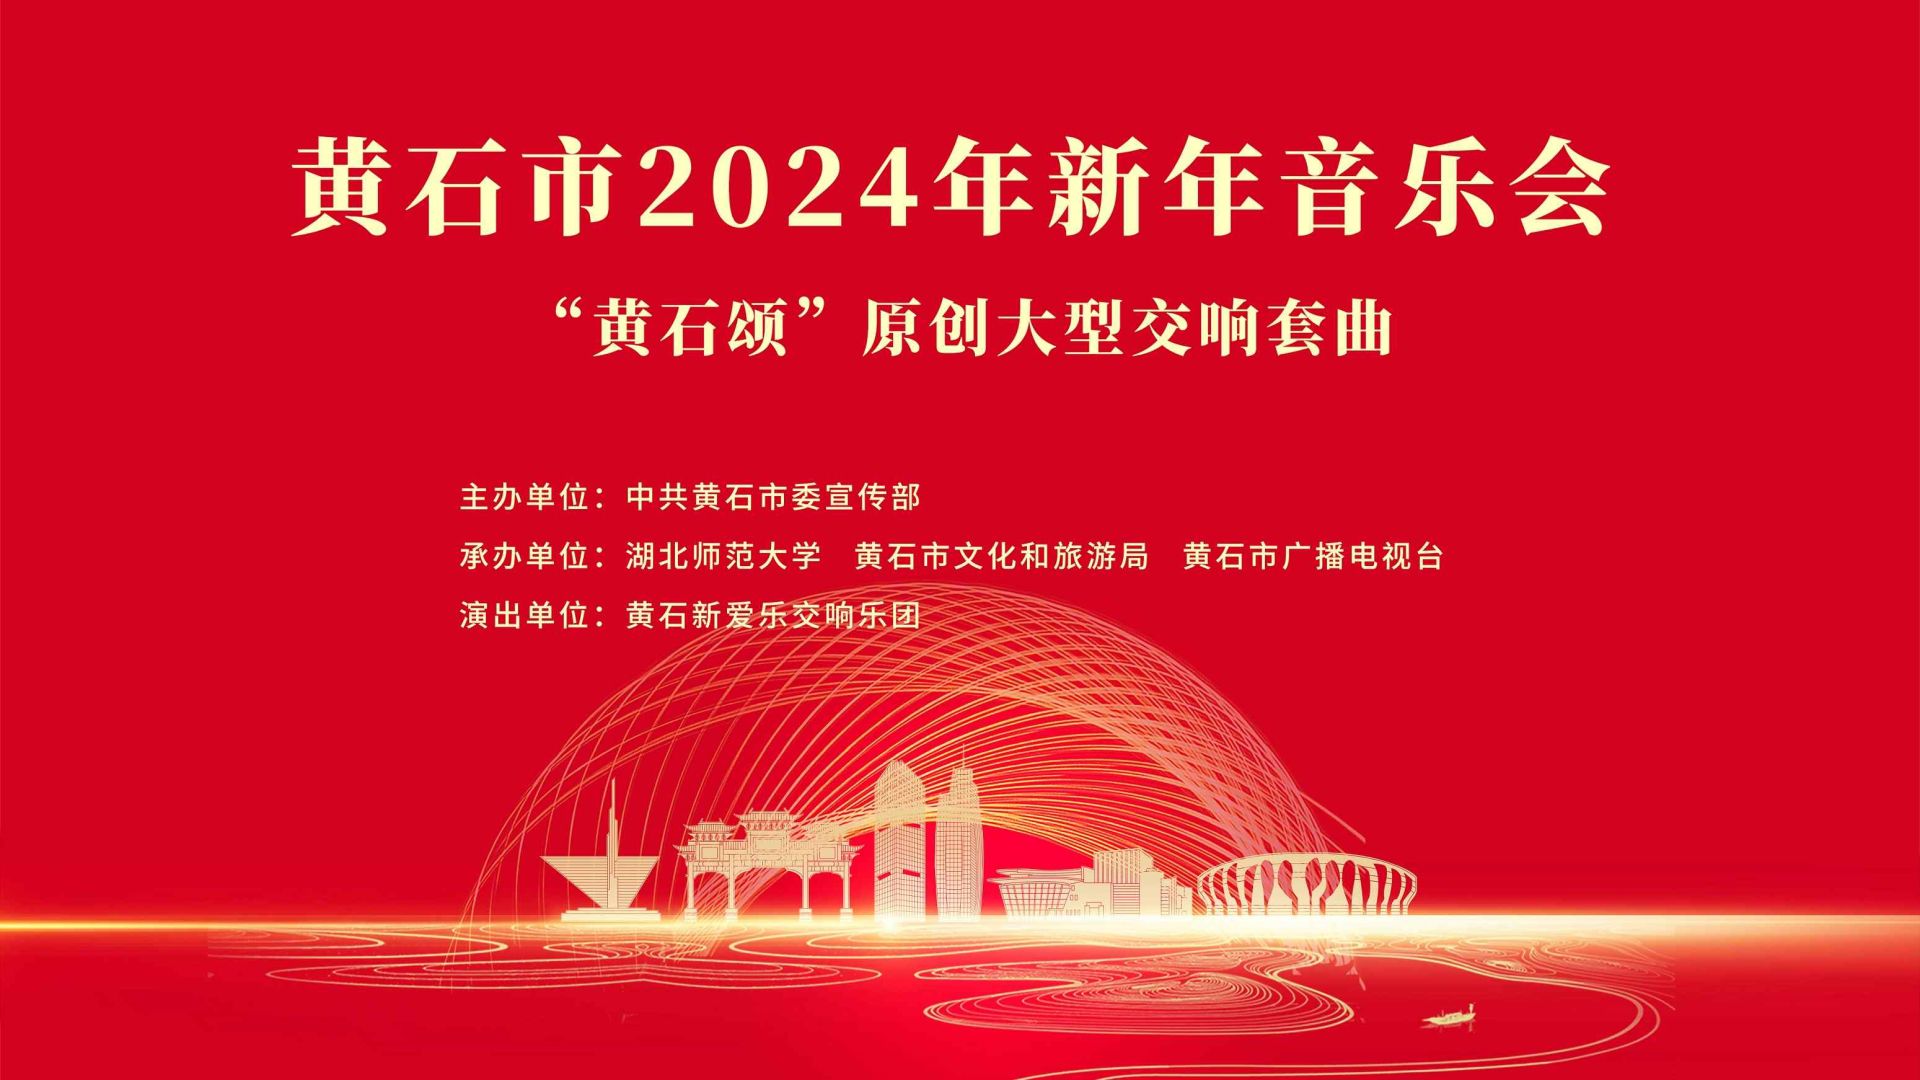 【直播】黃石市2024年新年音樂會——“黃石頌”原創大型交響套曲